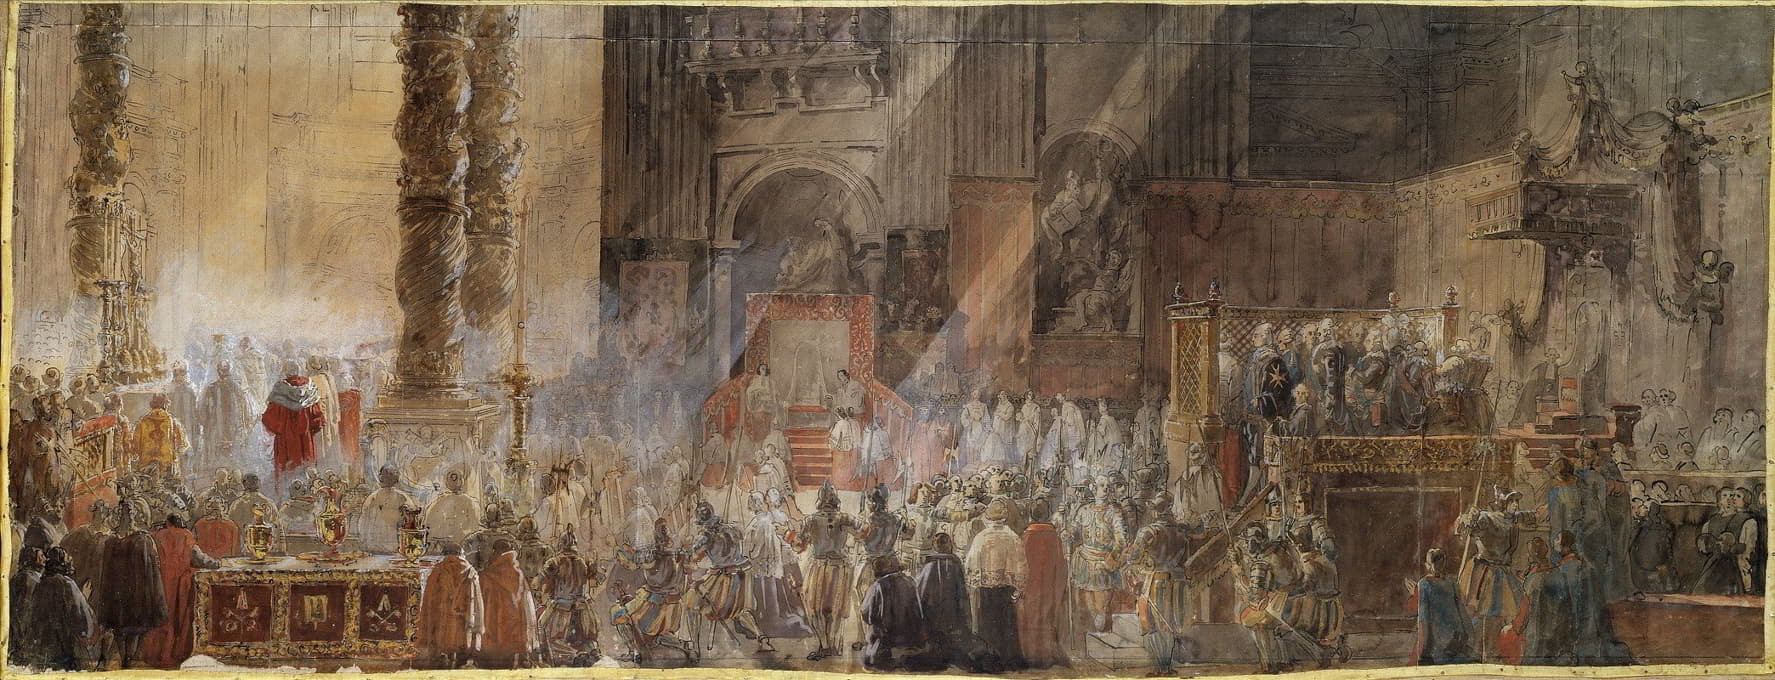 Louis Jean Desprez - Gustavus III Attending Christmas Mass in 1783, in St Peter’s, Rome